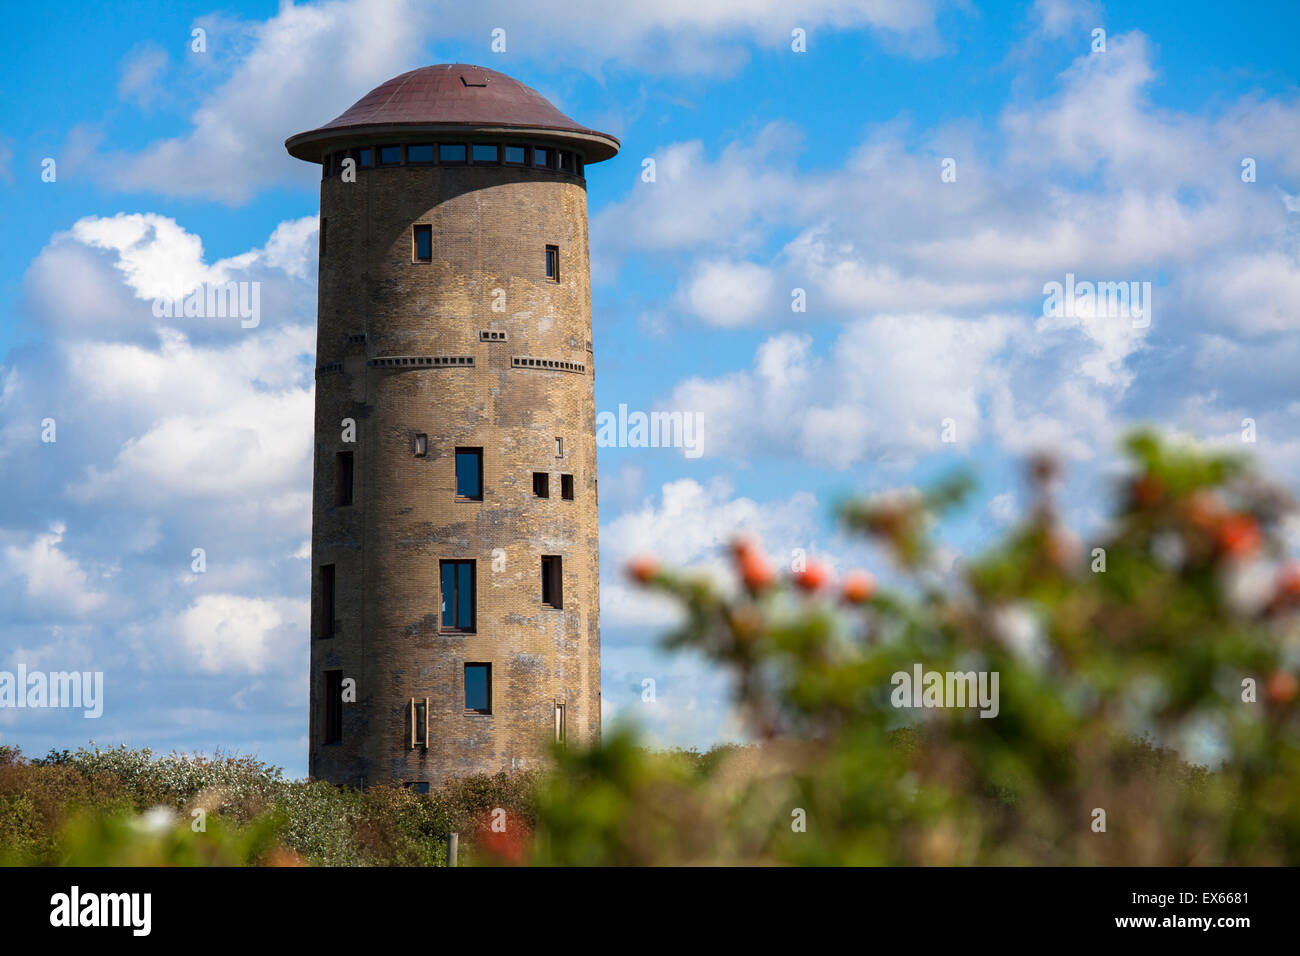 Europa e Paesi Bassi, la vecchia torre di acqua nelle dune in Domburg sulla penisola di Walcheren. Foto Stock